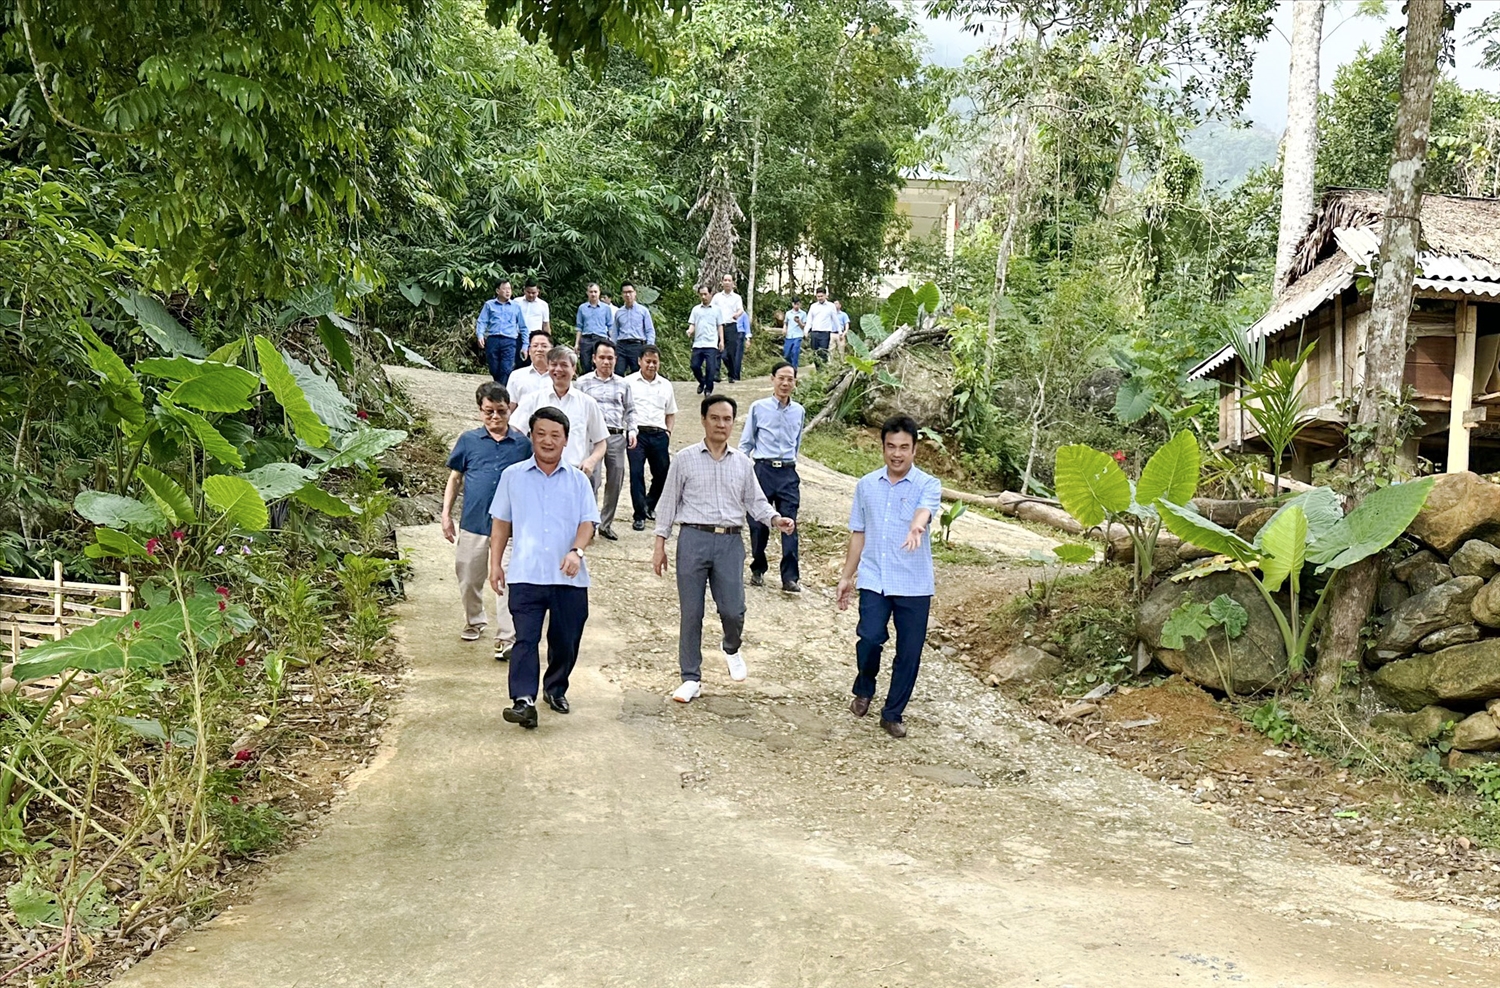 Bộ trưởng, Chủ nhiệm Hầu A Lềnh cùng lãnh đạo tỉnh Thanh Hoá, huyện Bá Thước thăm công trình đường giao thông nông thôn, tại thôn Báng, xã Thành Sơn, được xây dựng từ nguồn vốn của Chương trình MTQG 1719